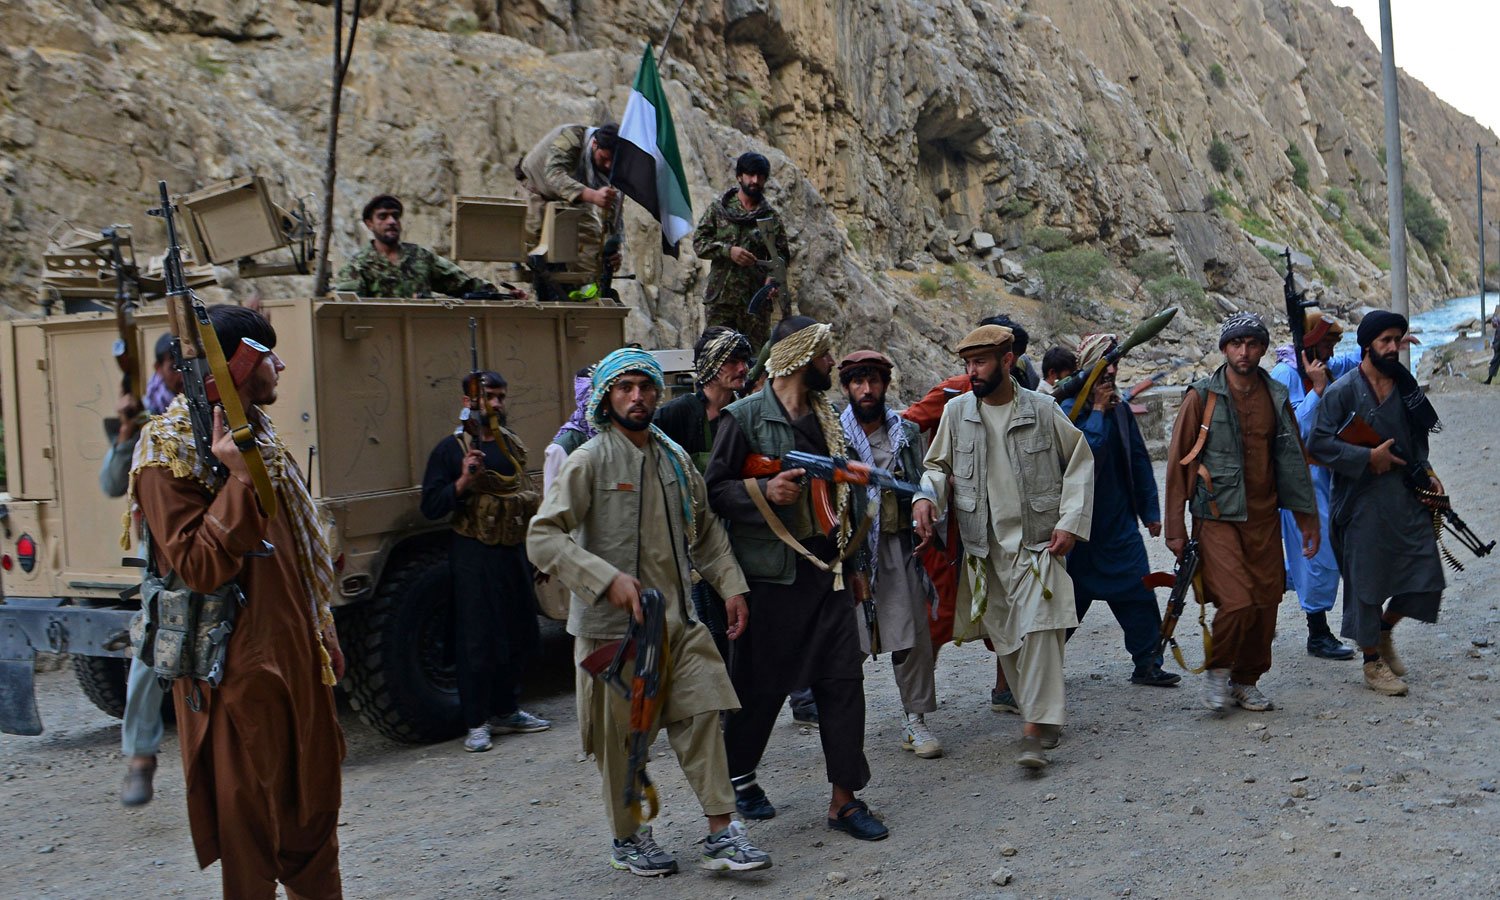 طالبان کا ایک حملہ مزاحمتی فورسز نے پسپا کردیا، ذرائع، مقامی افراد کا طالبان پر پنجشیر کا مواصلاتی رابطہ منقطع کرنے کا الزام، مزاحمتی فورس کے اہلکاروں کی جنگی مشقوں کی تصاویر بھی سامنے آگئیں— تصاویر اے ایف پی